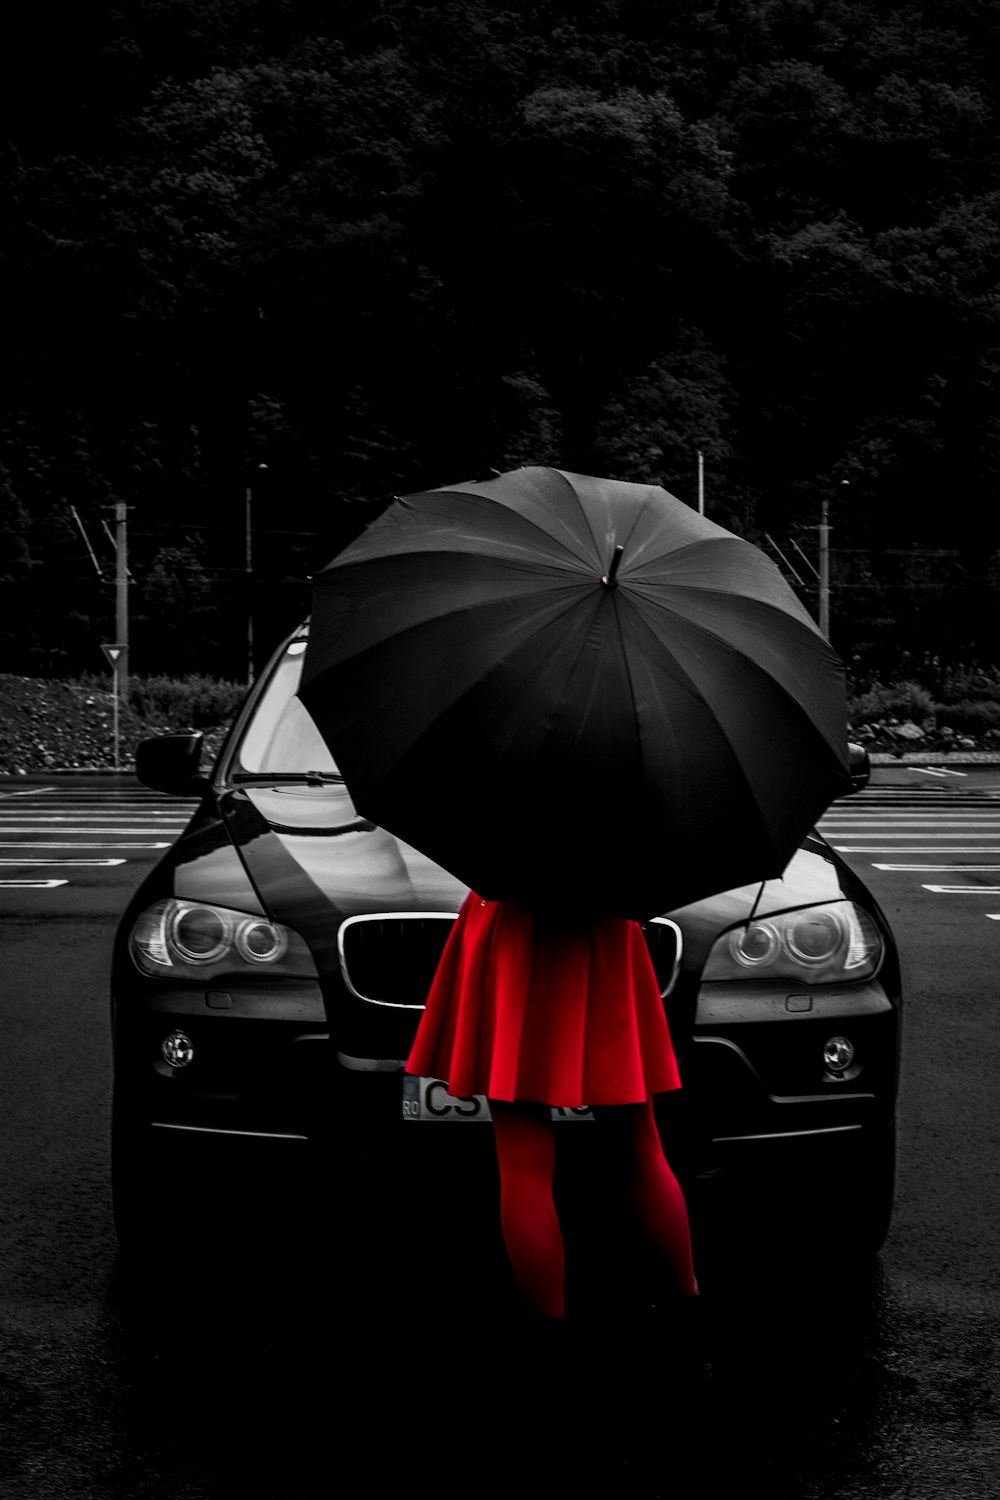 검은 우산 아래 빨간 플레어 드레스를 입은 여자가 차량 앞에 서 있습니다.